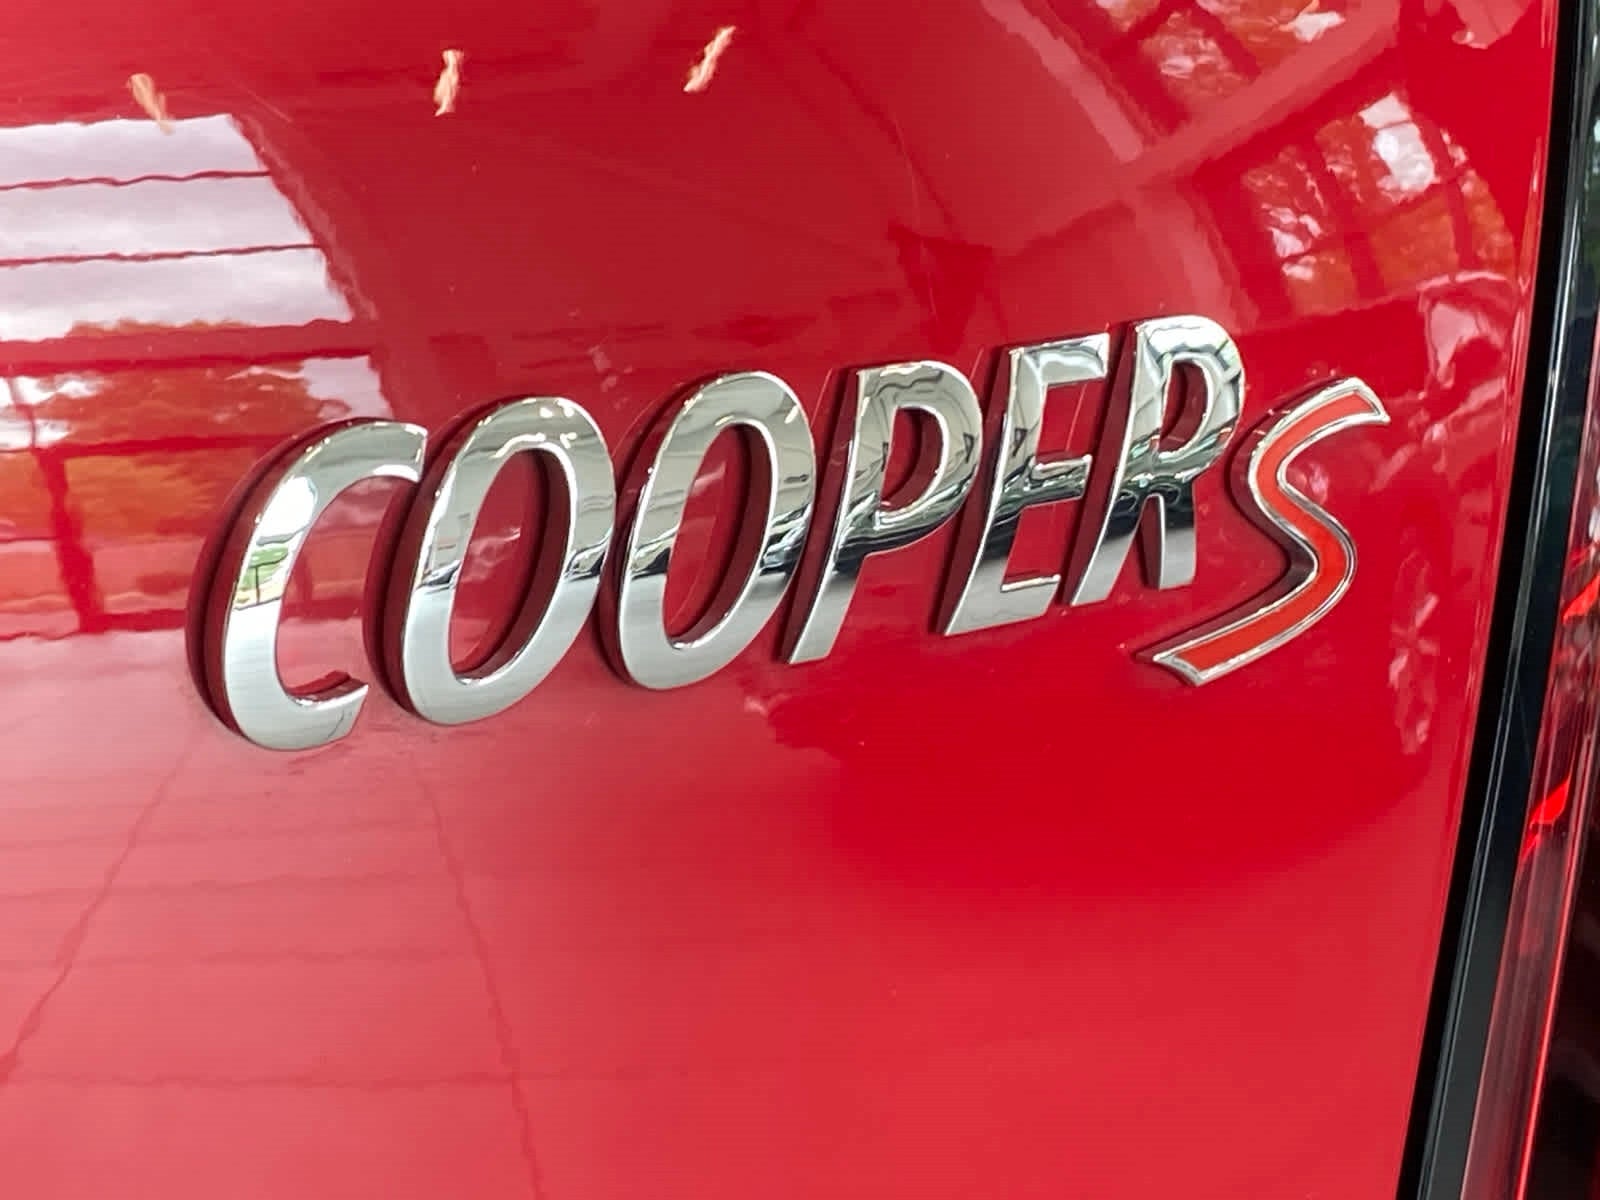 2021 MINI Countryman All4 Cooper S